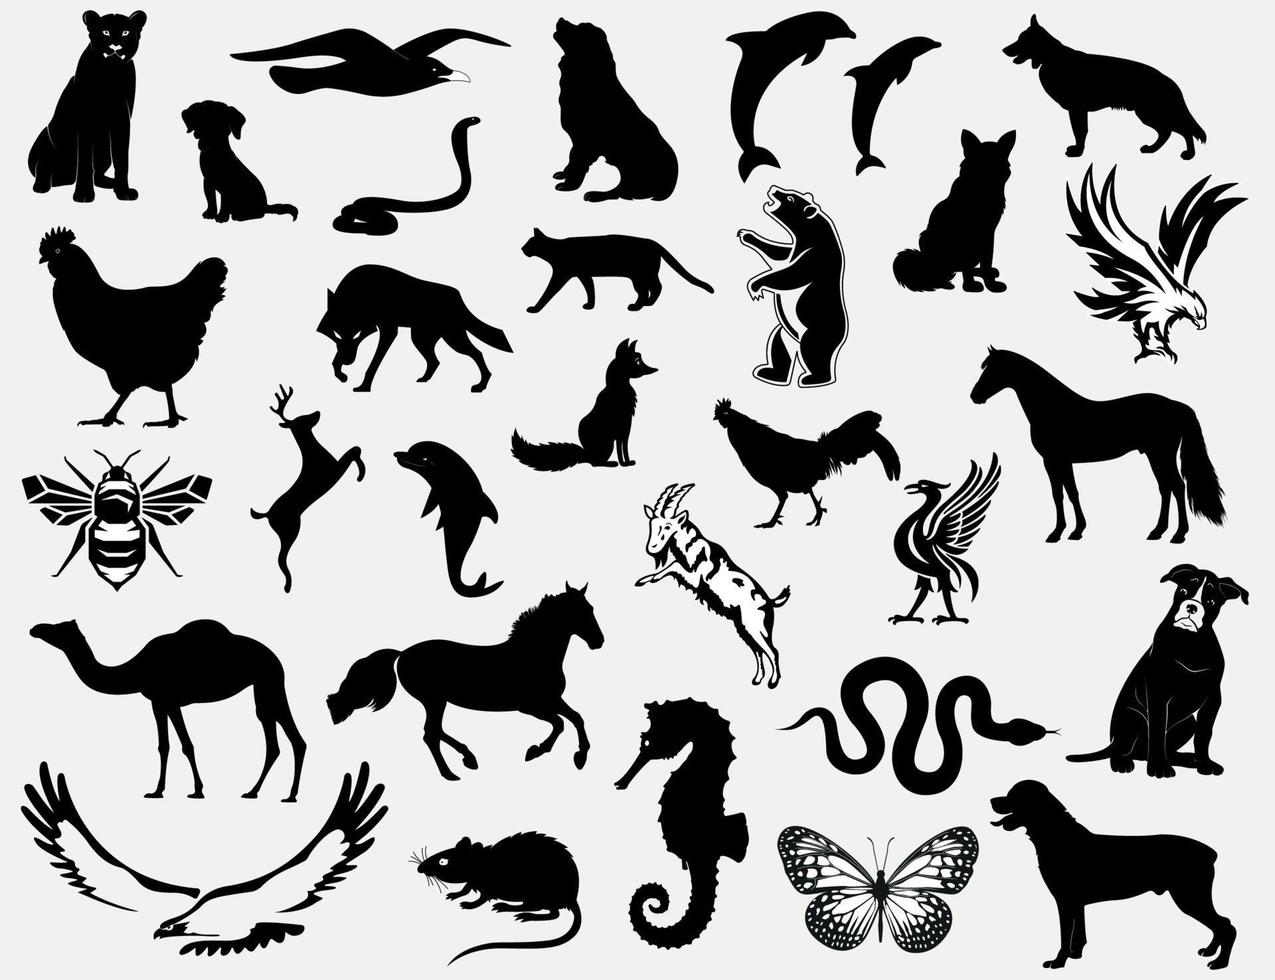 uppsättning av djur silhuetter, hundar, däggdjur, fåglar, insekter, reptiler och hav varelser svart och vit djur illustrationer vektor